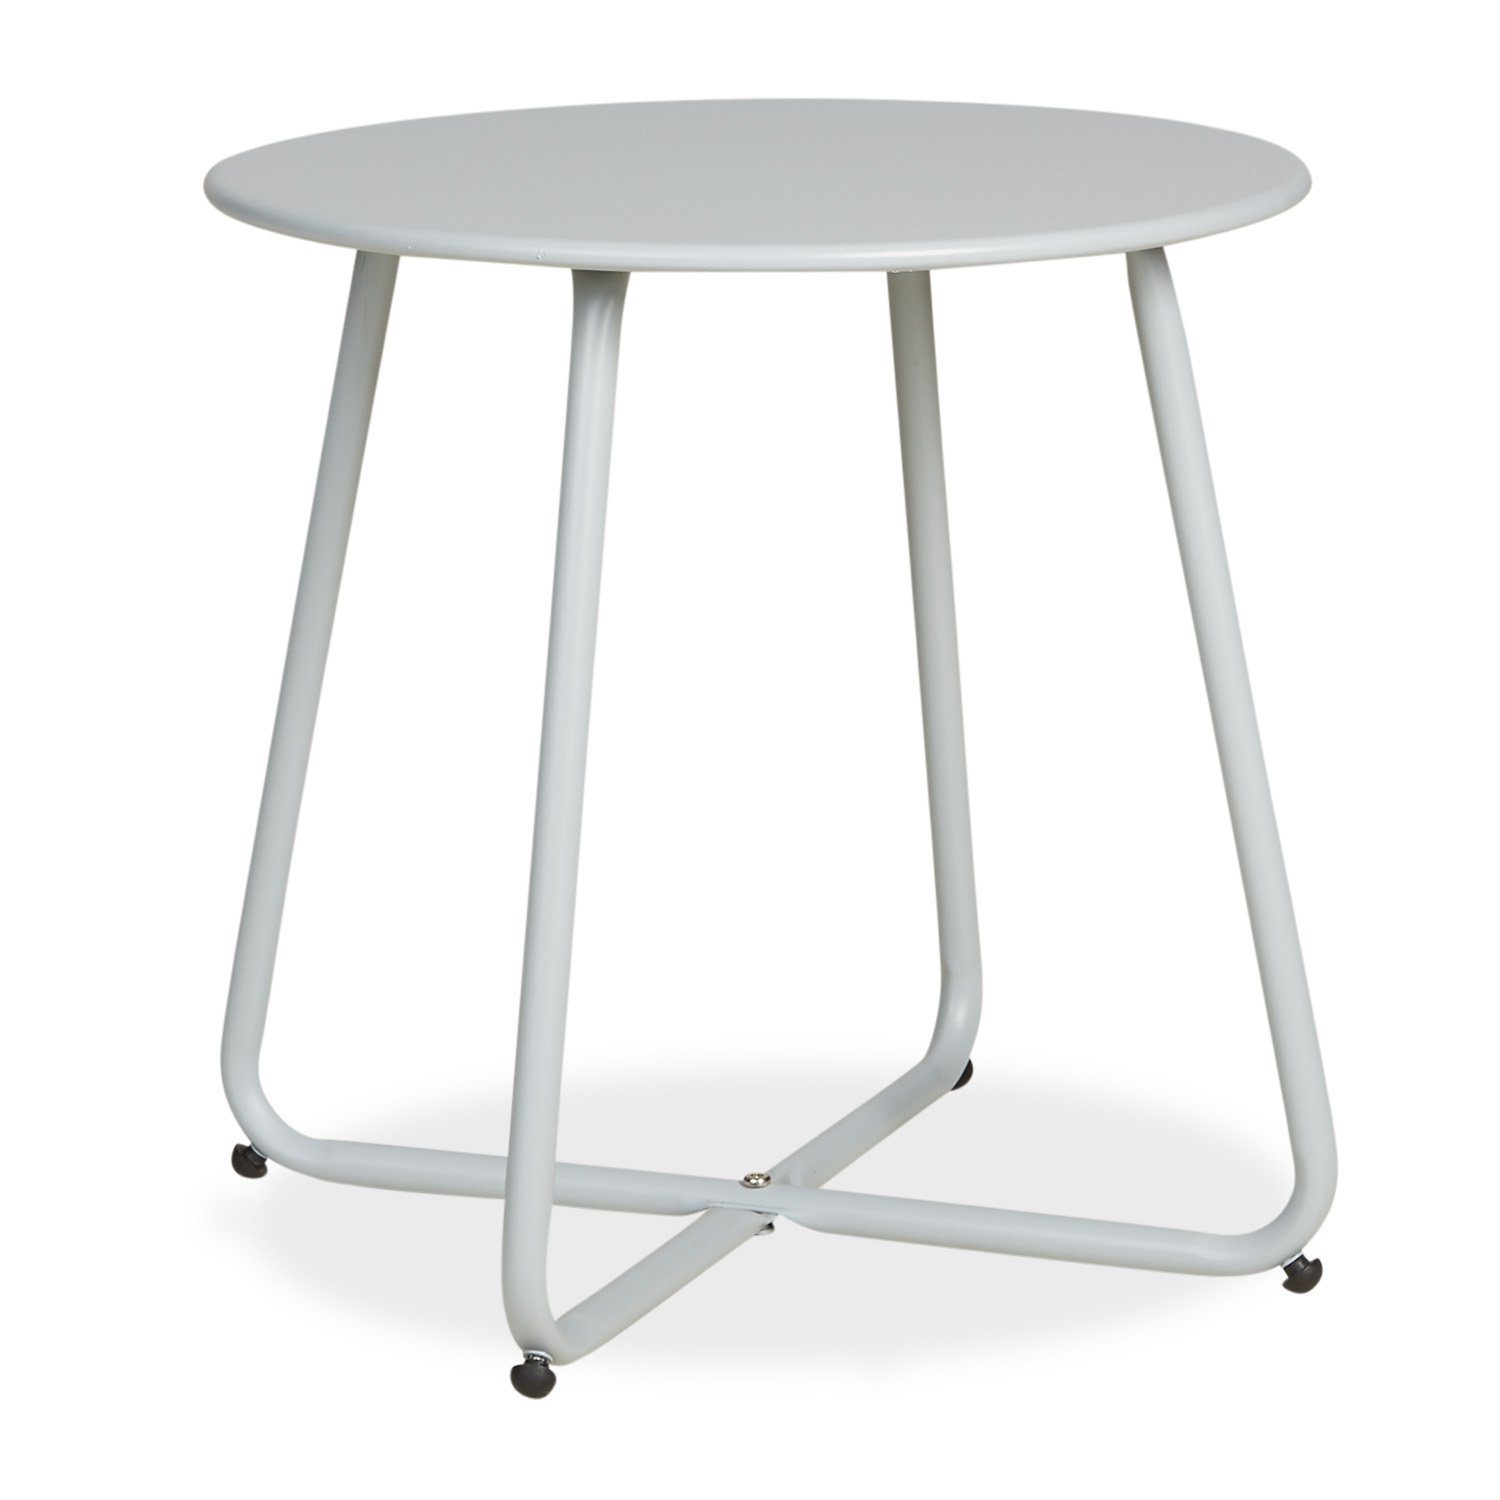 Metall Set) Tisch grau | Homestyle4u Kaffeetisch Rund | grau Beistelltisch grau Gartentisch (kein